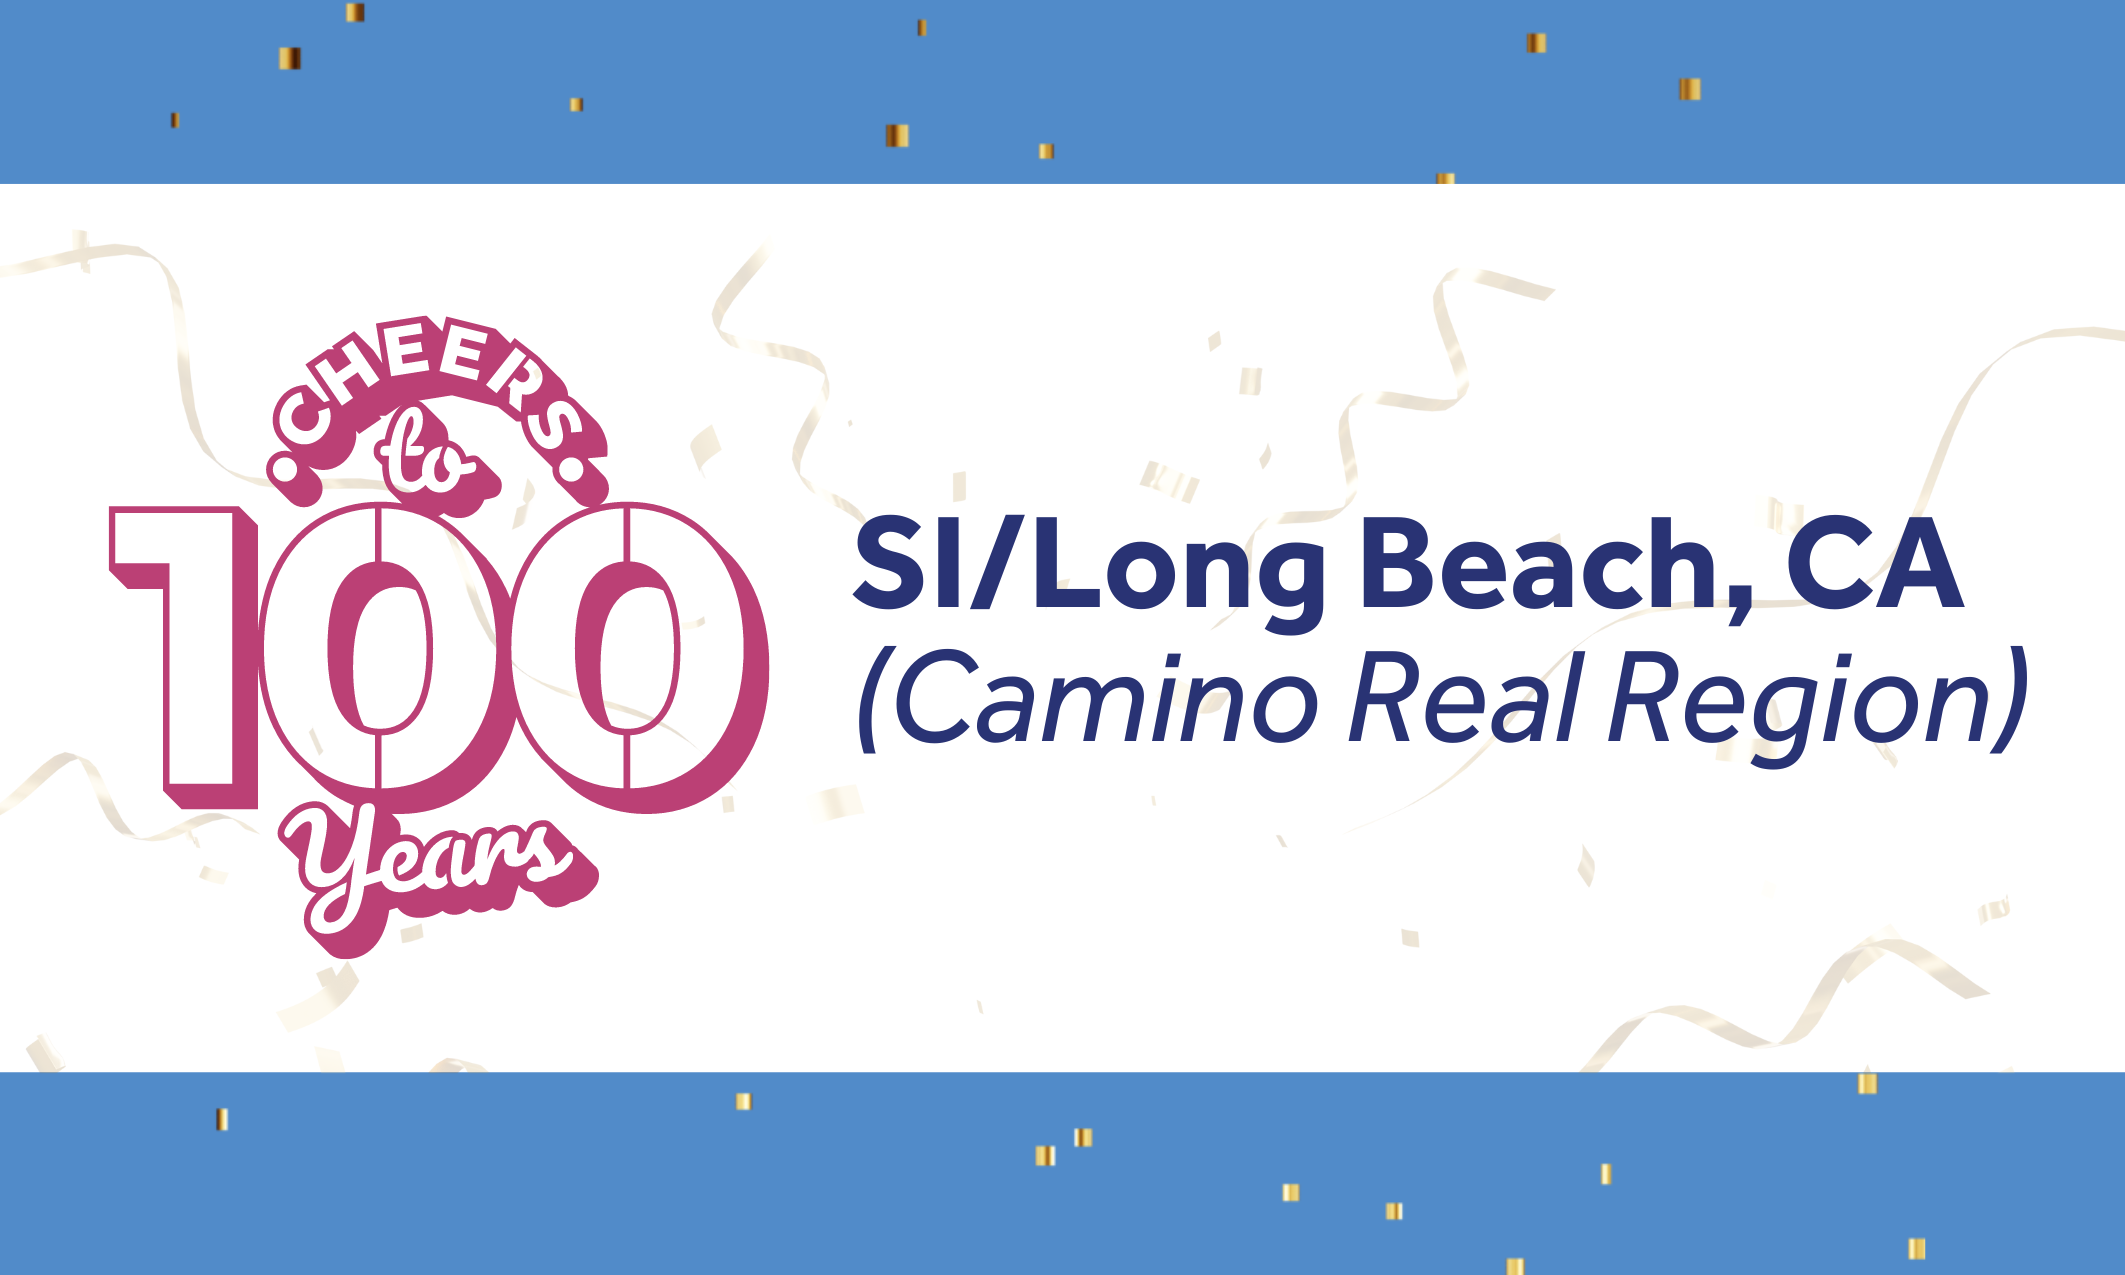 100 anos de serviço para a SI/Long Beach, CA